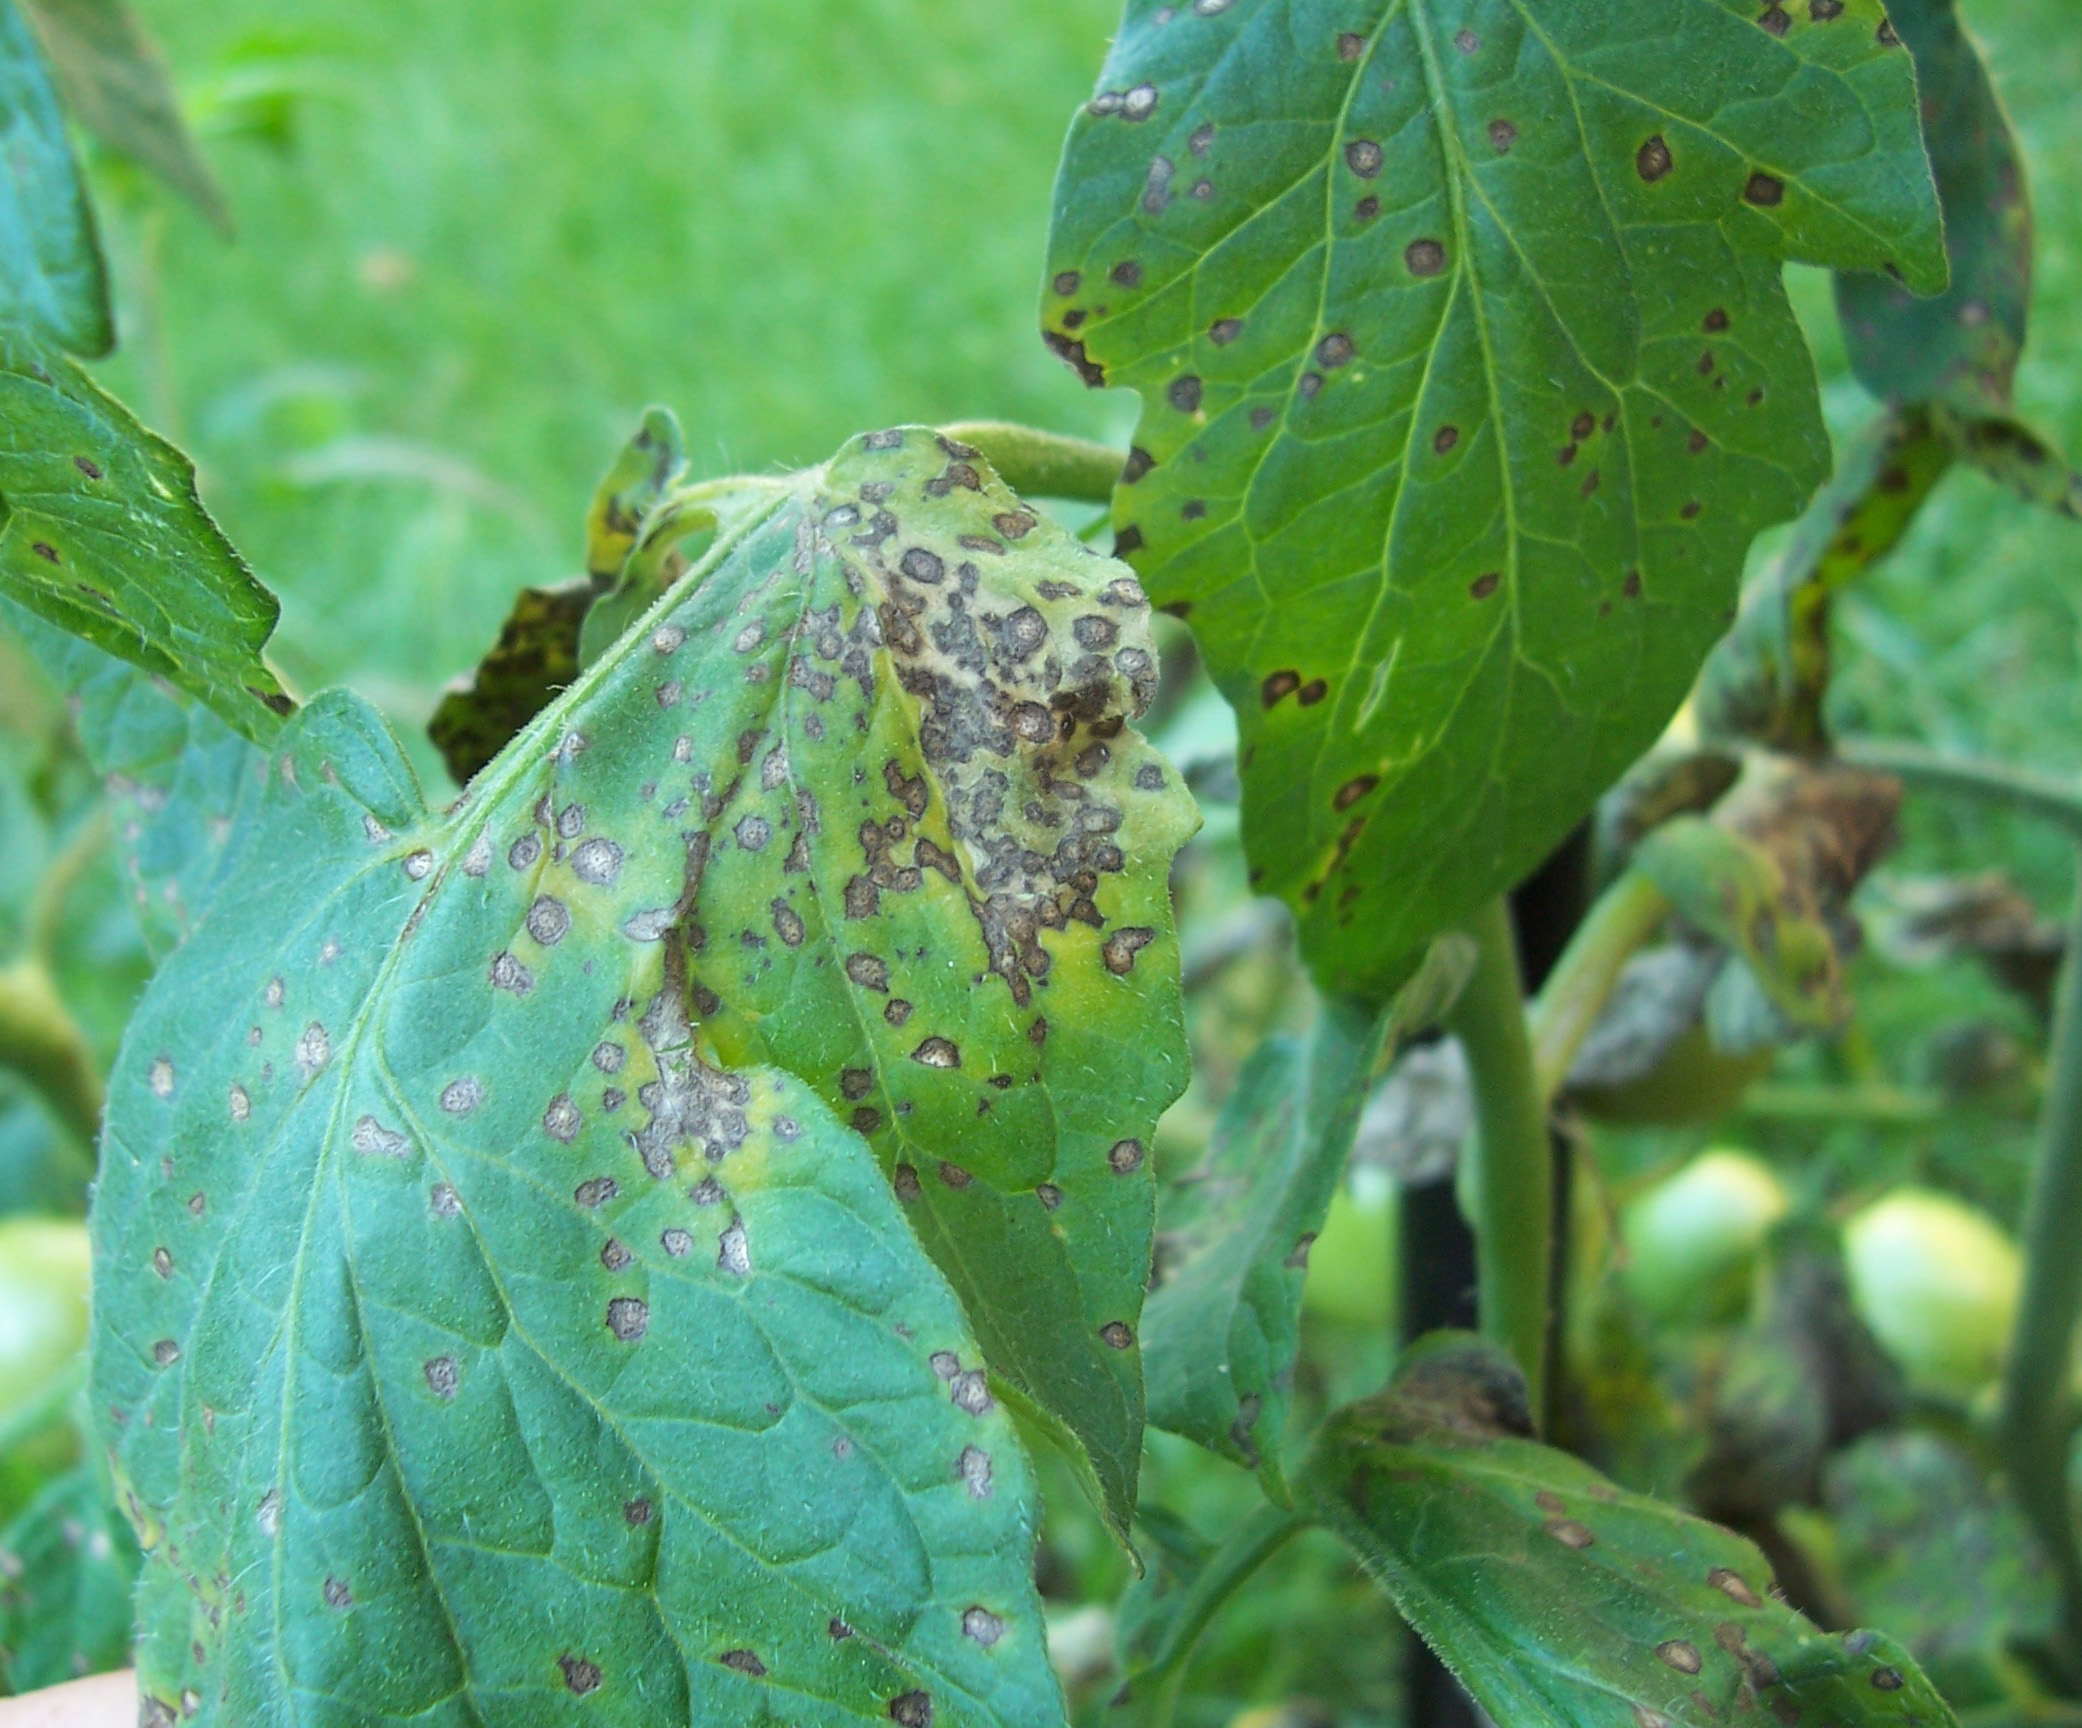 Septoria leaf spot/blight